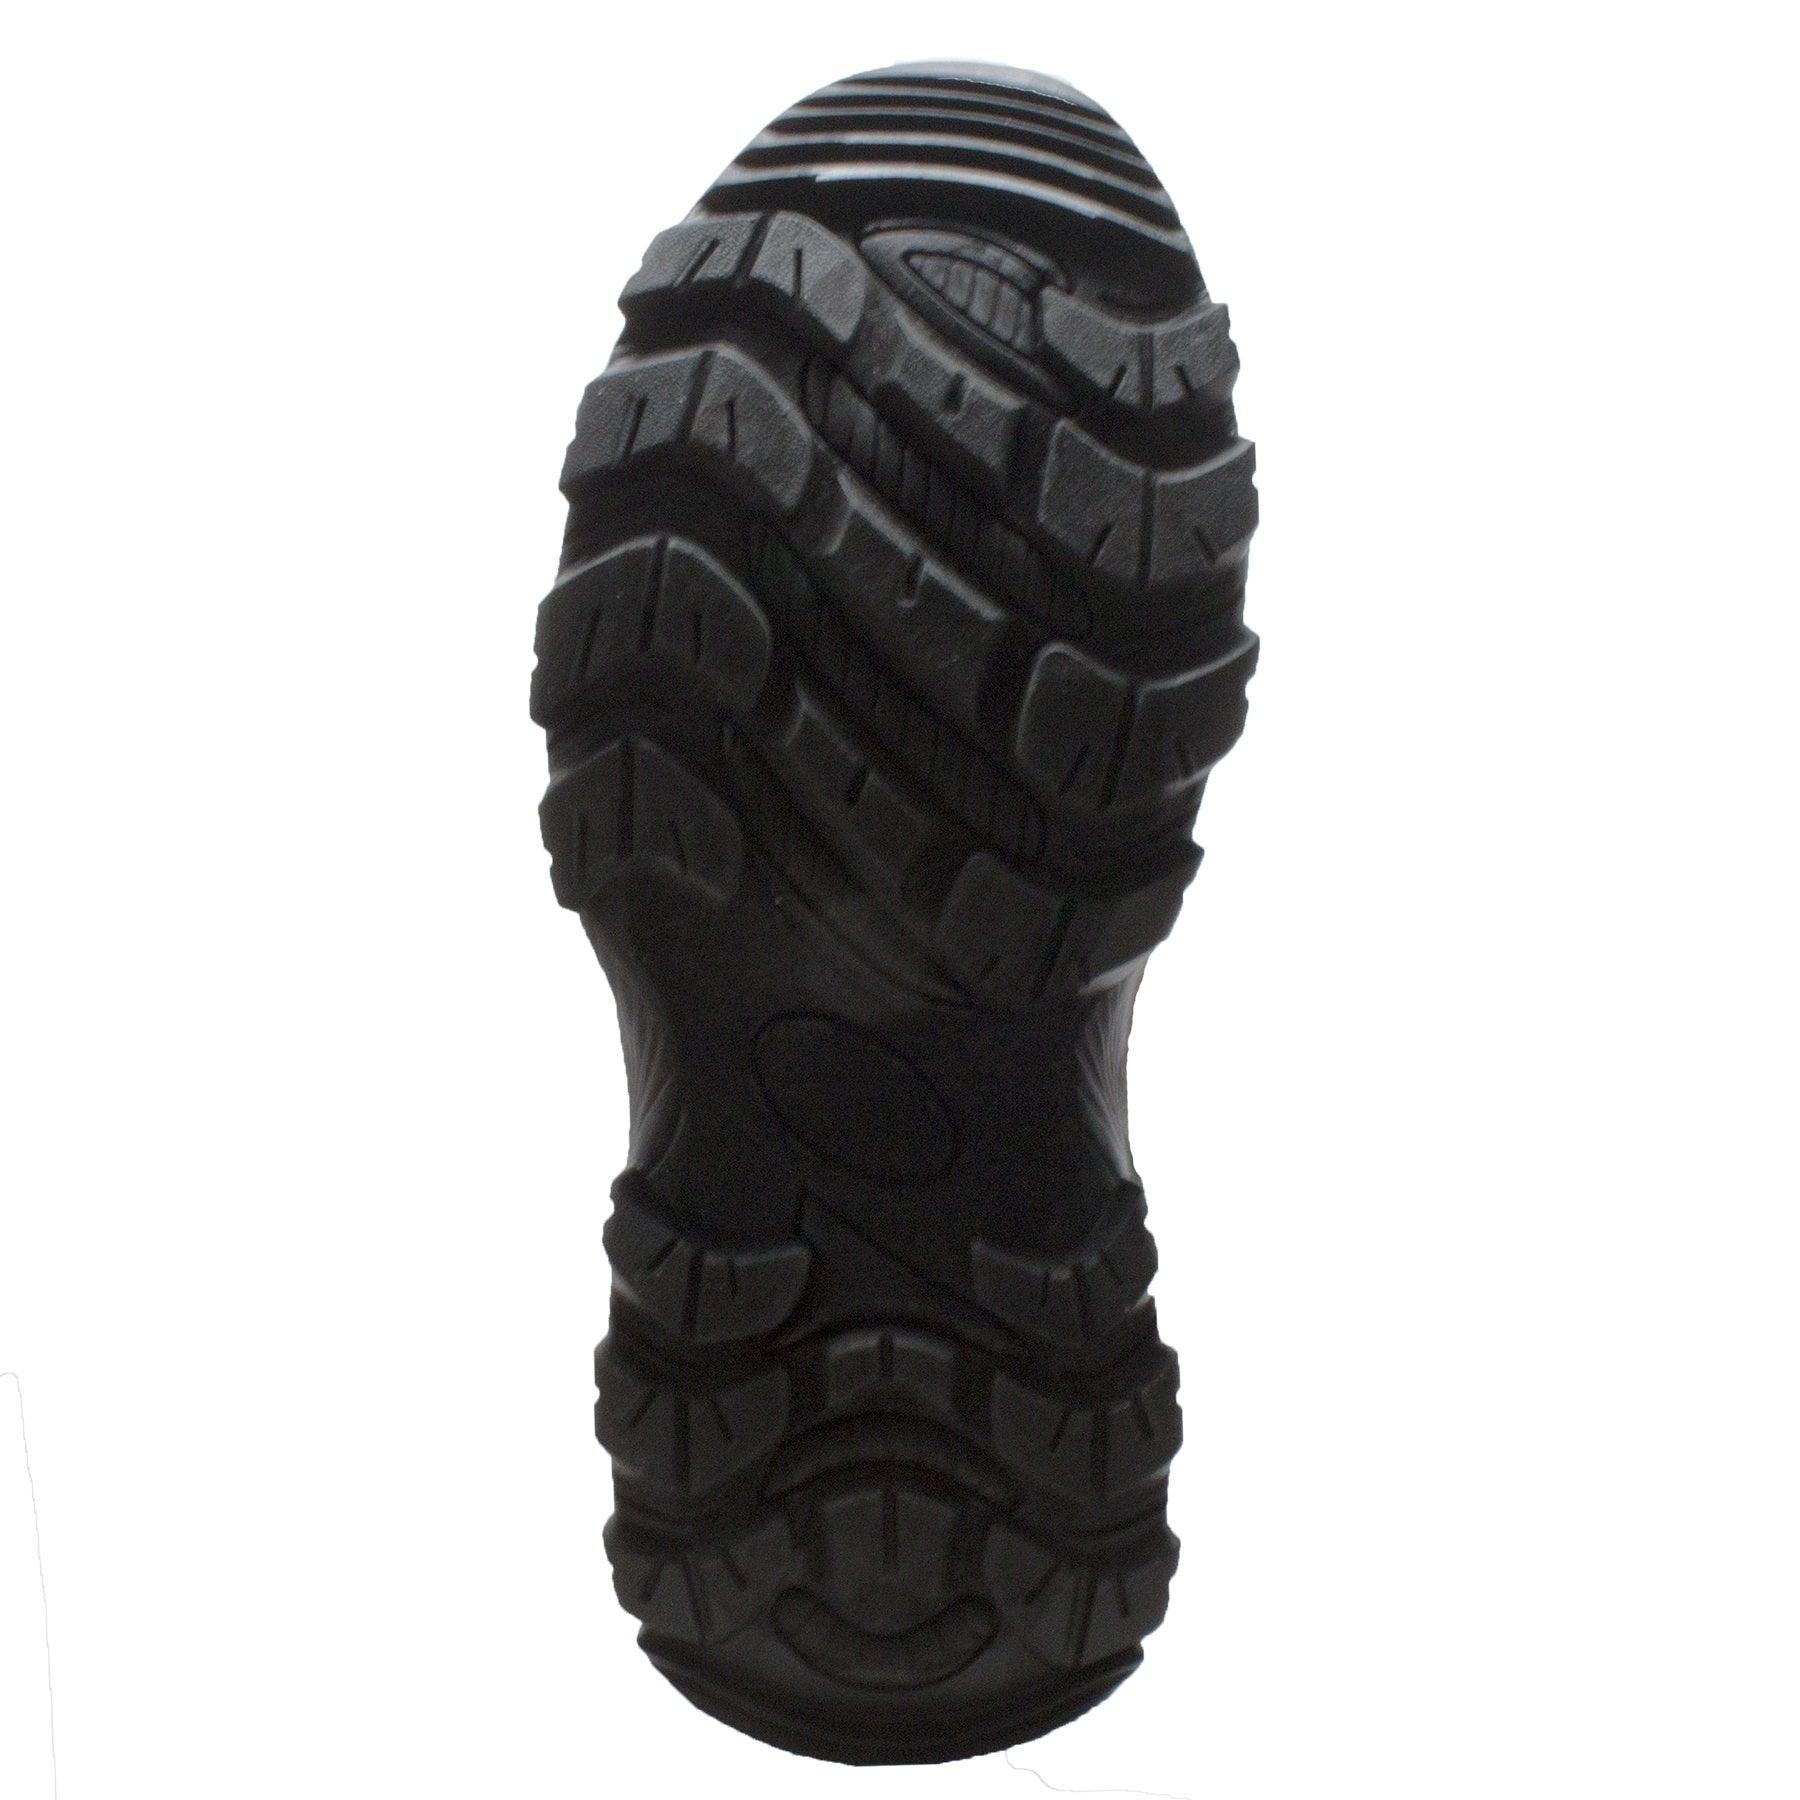 Tecs Men's 17" Rubber Side Zip Boot Brown Camo - Flyclothing LLC